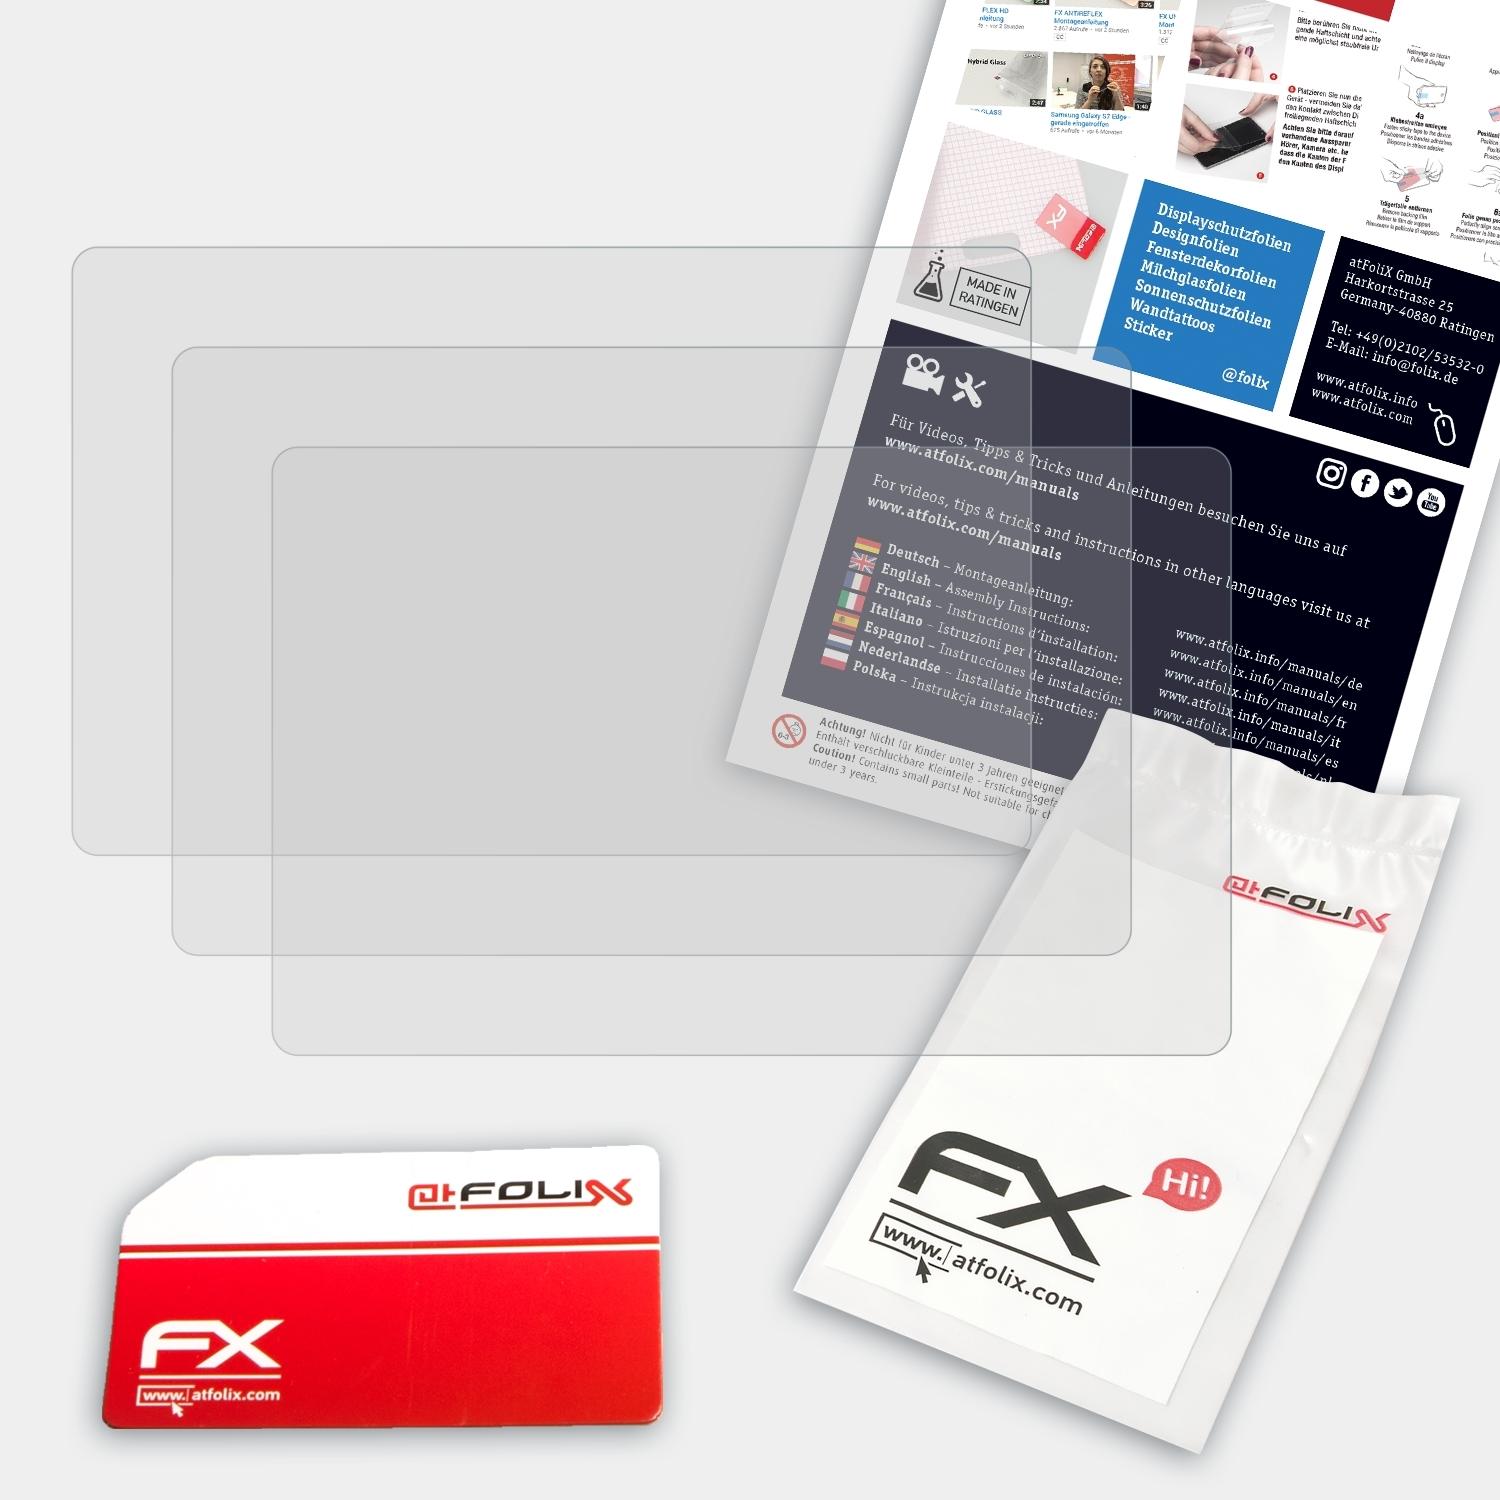 ATFOLIX 3x Lumix FX-Antireflex Panasonic Displayschutz(für DMC-FZ72)